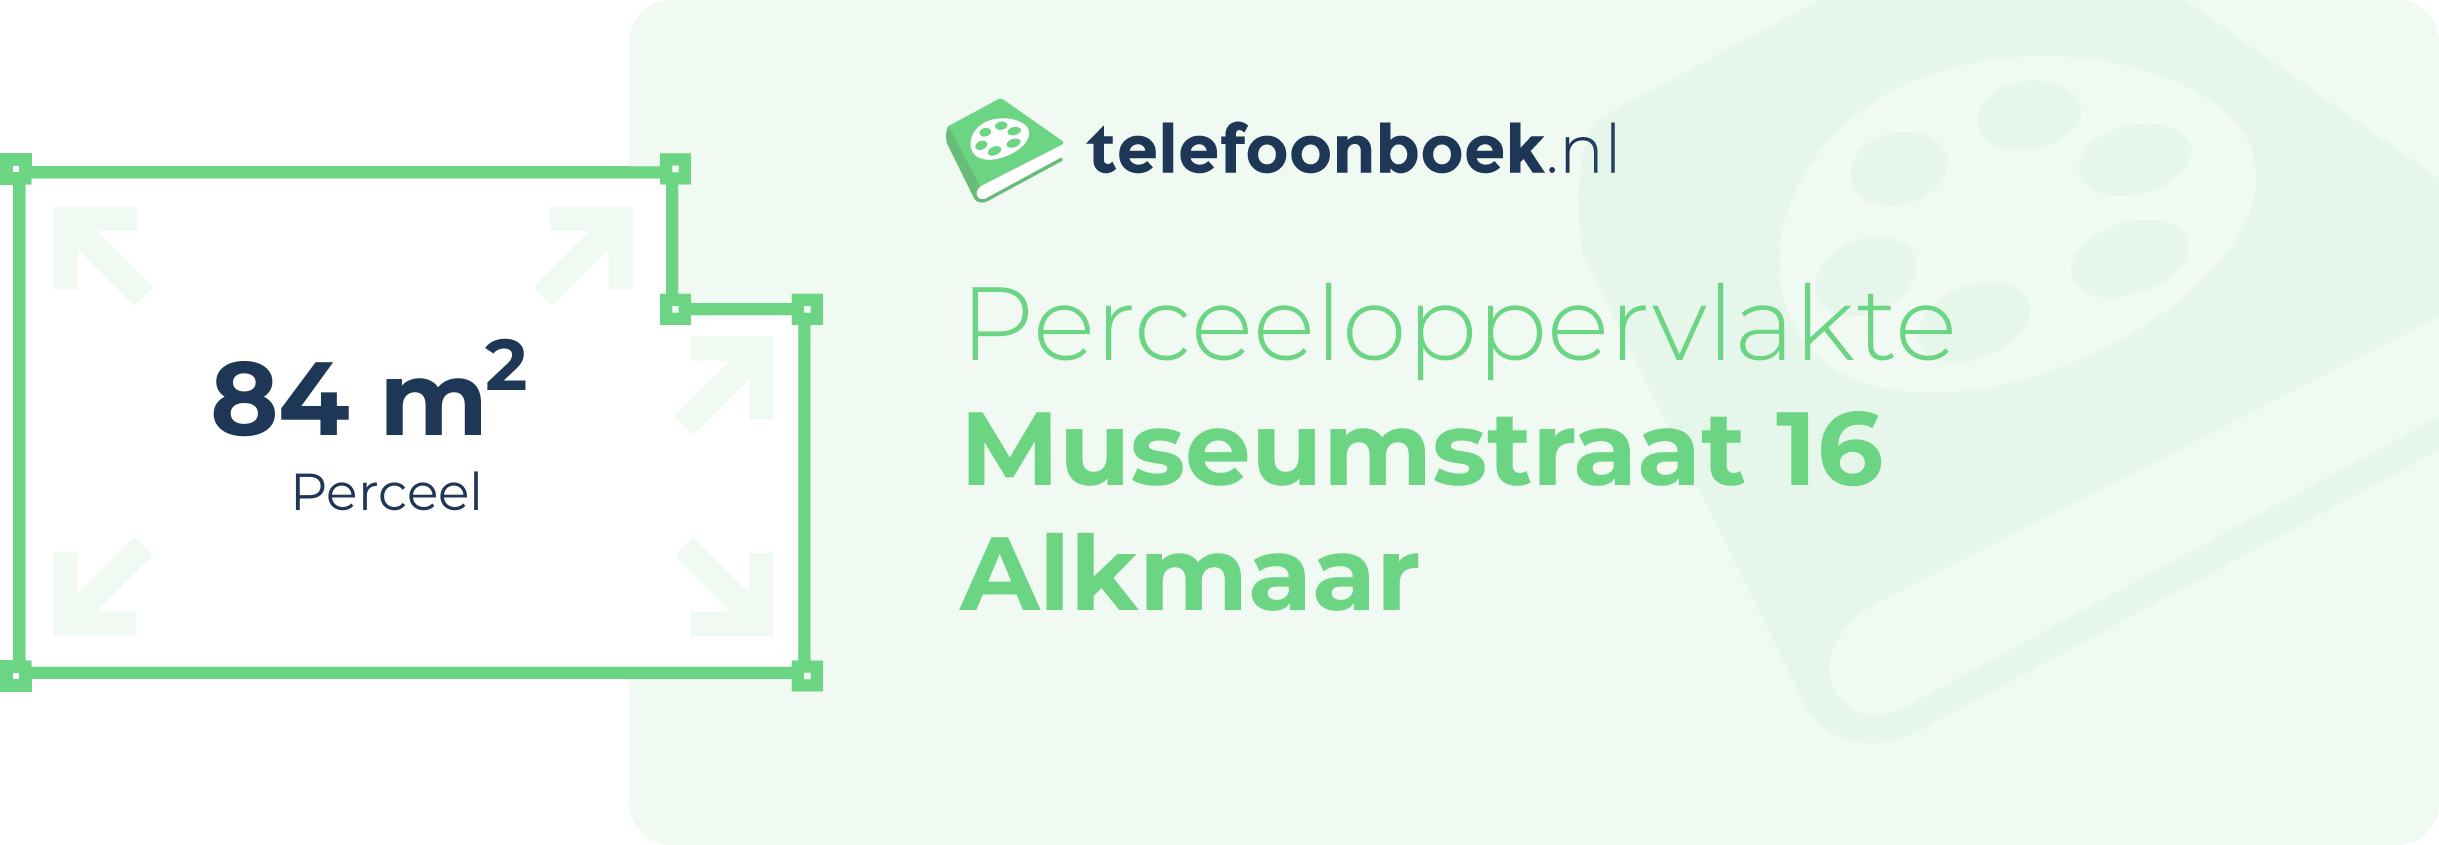 Perceeloppervlakte Museumstraat 16 Alkmaar